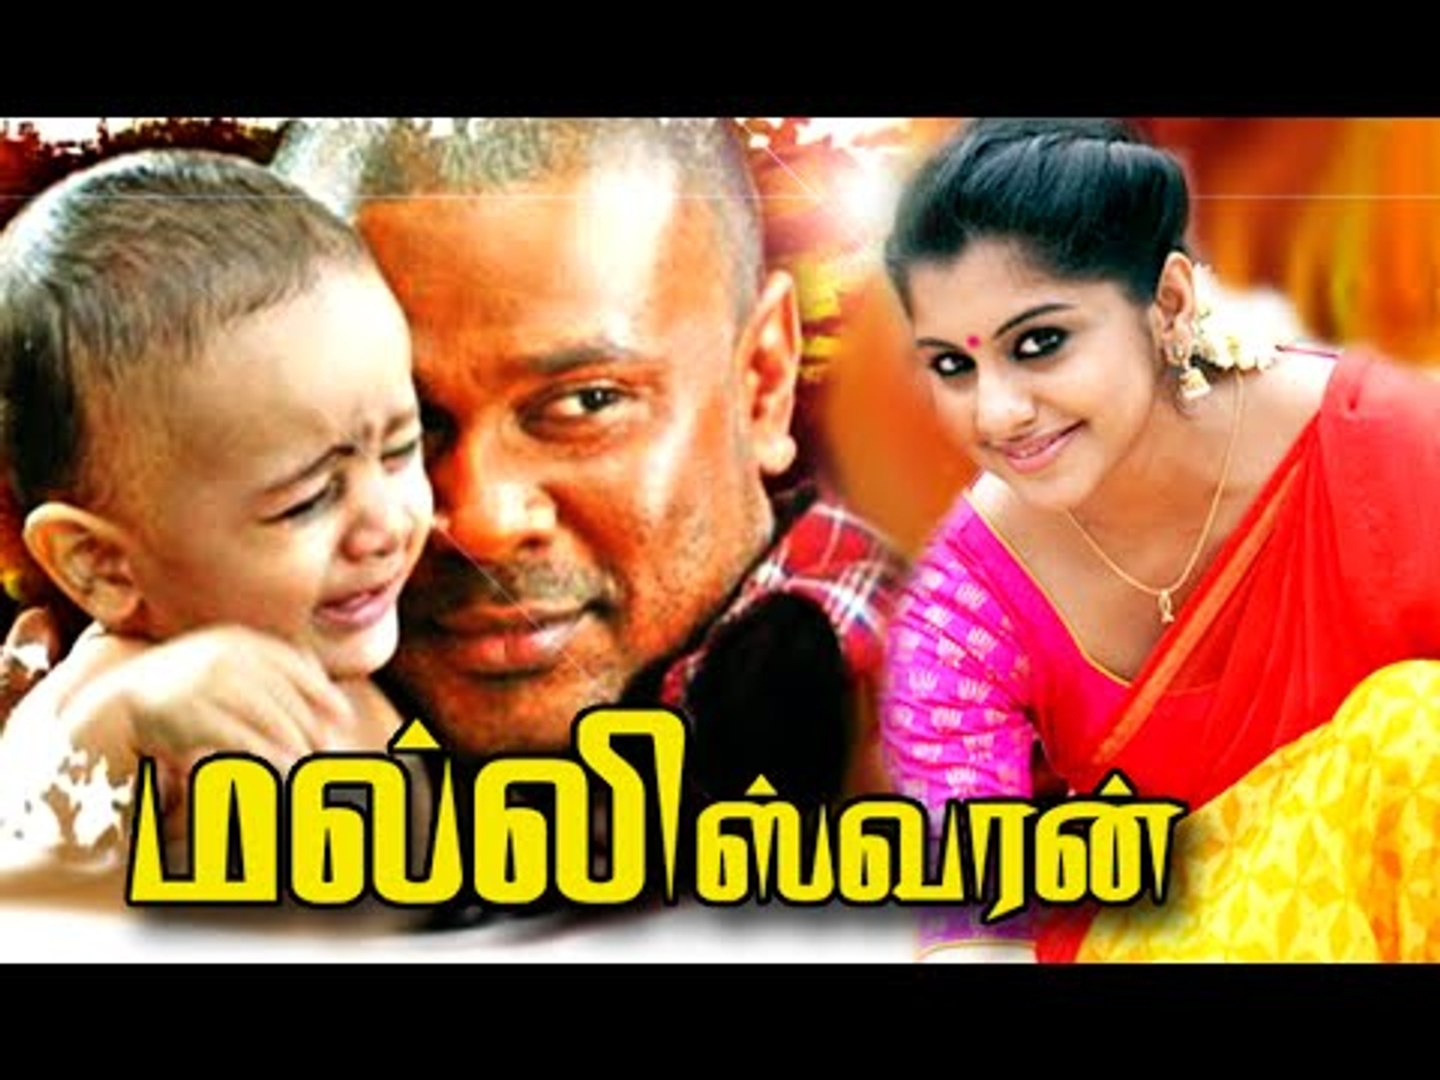 ⁣Tamil New Movies 2016 Full Movie HD # Malleswaran Tamil Full Movie # Tamil Full Movie 2016 Latest